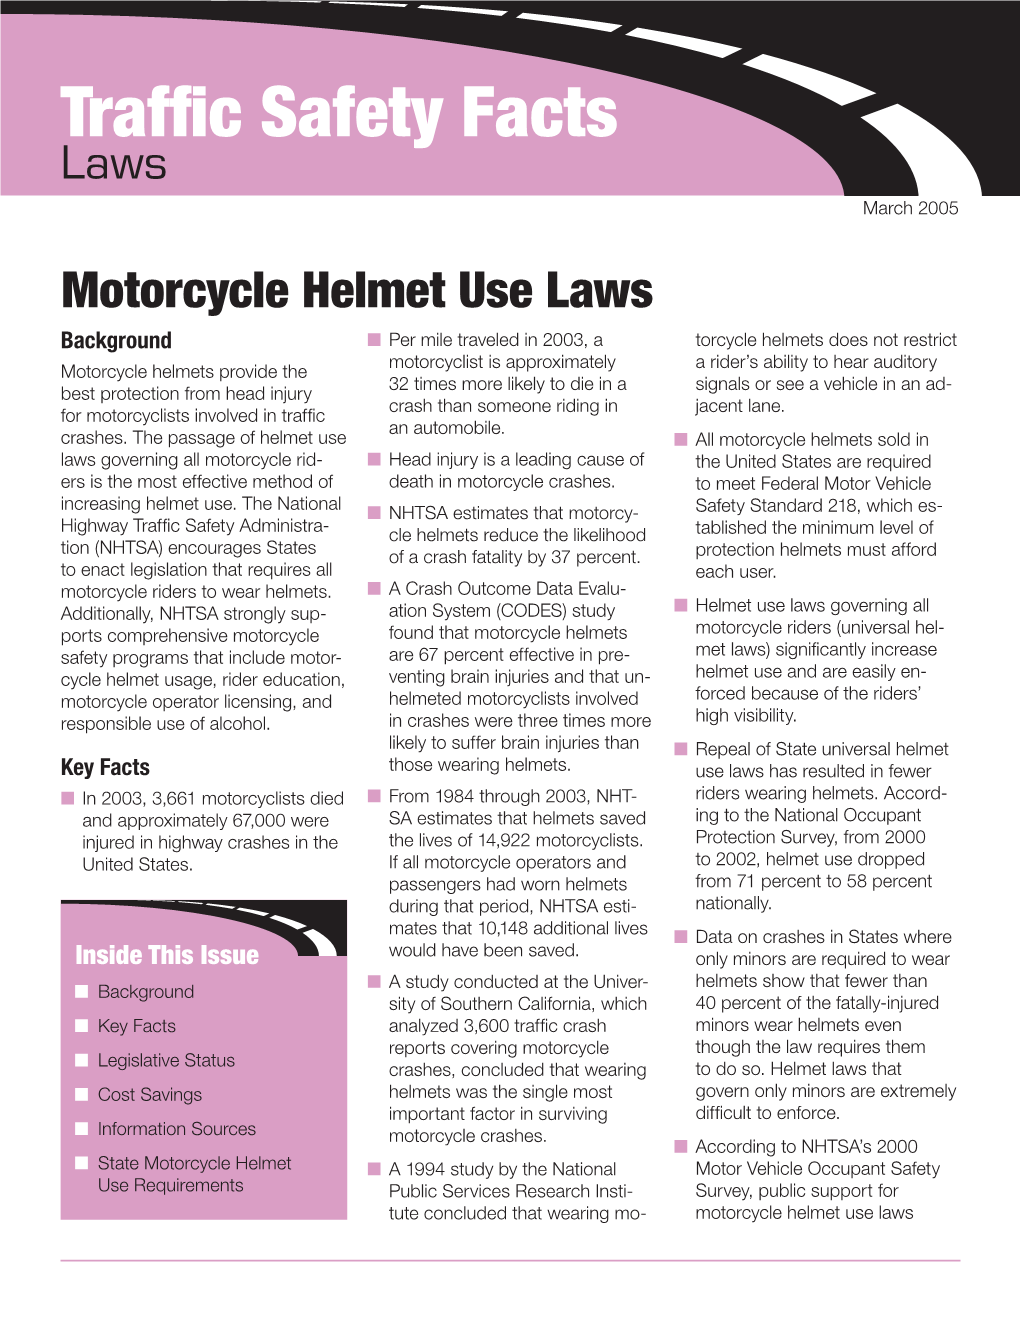 Motorcycle Helmet Use Laws